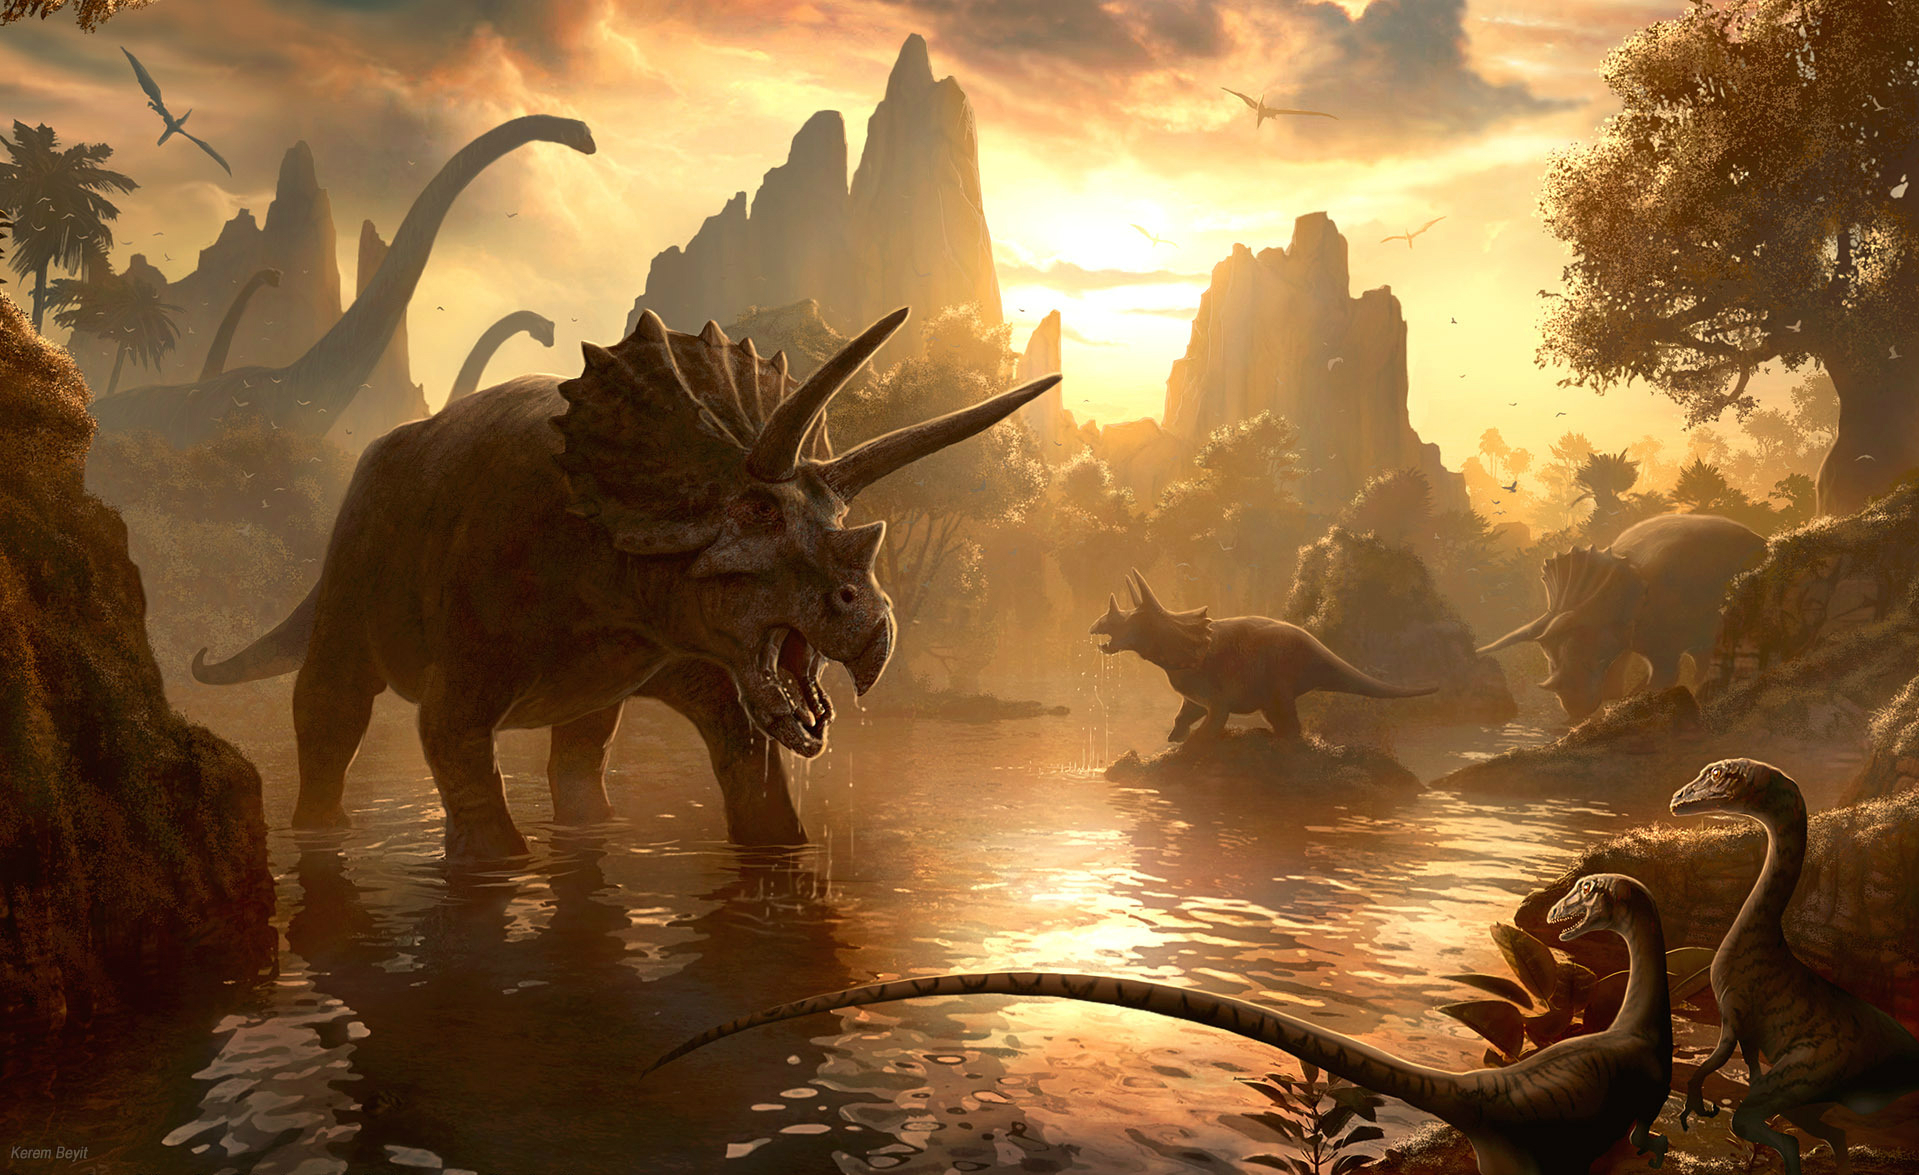 Majestic triceratops and brachiosaurus roam in prehistoric landscape.